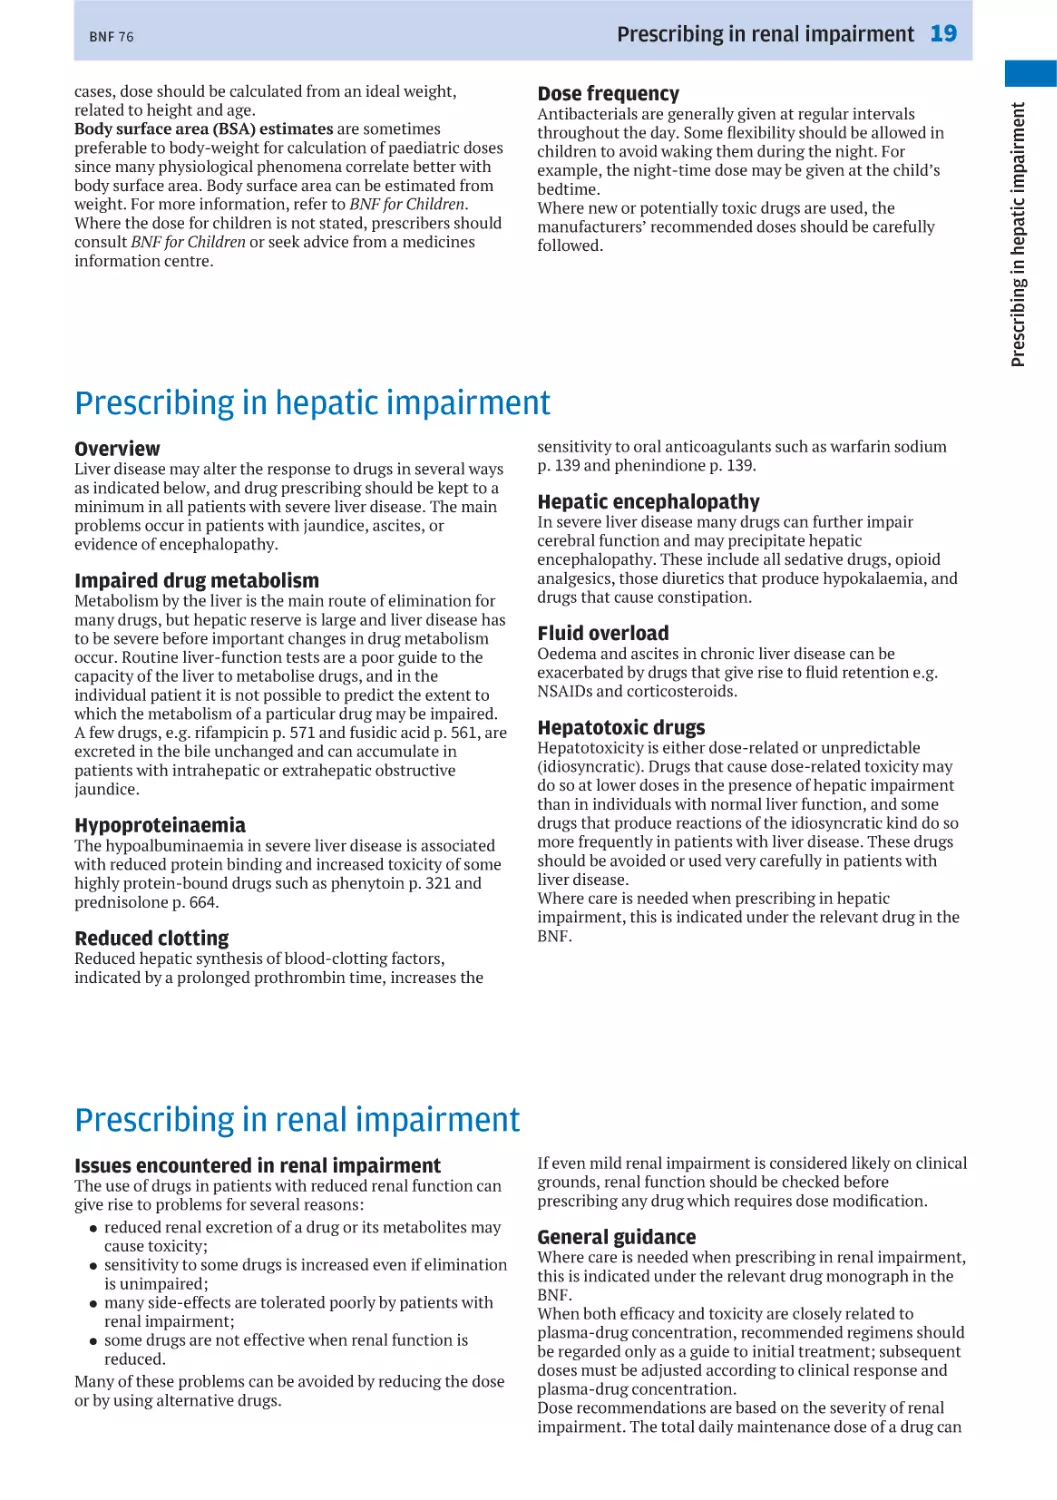 Prescribing in hepatic impairment
Prescribing in renal impairment